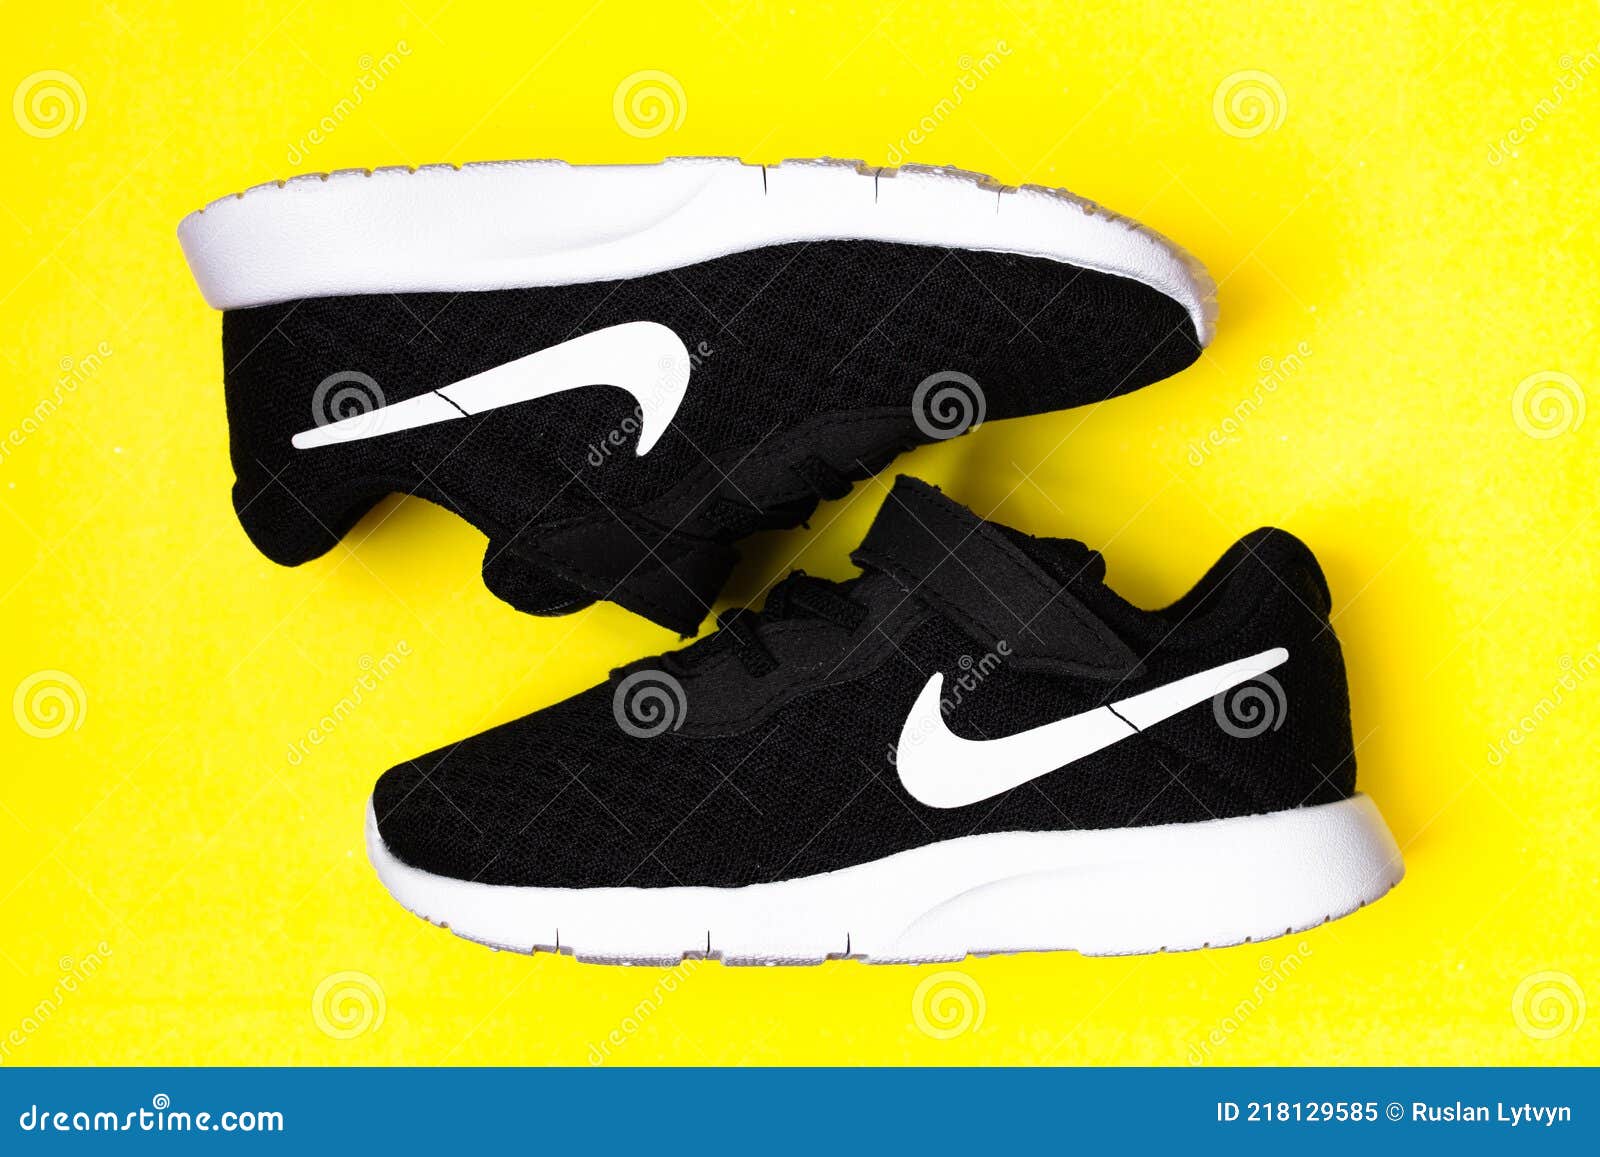 Zapatillas Nike Tanjun Tdv Negras Para Niños editorial - Imagen de elemento, actividad: